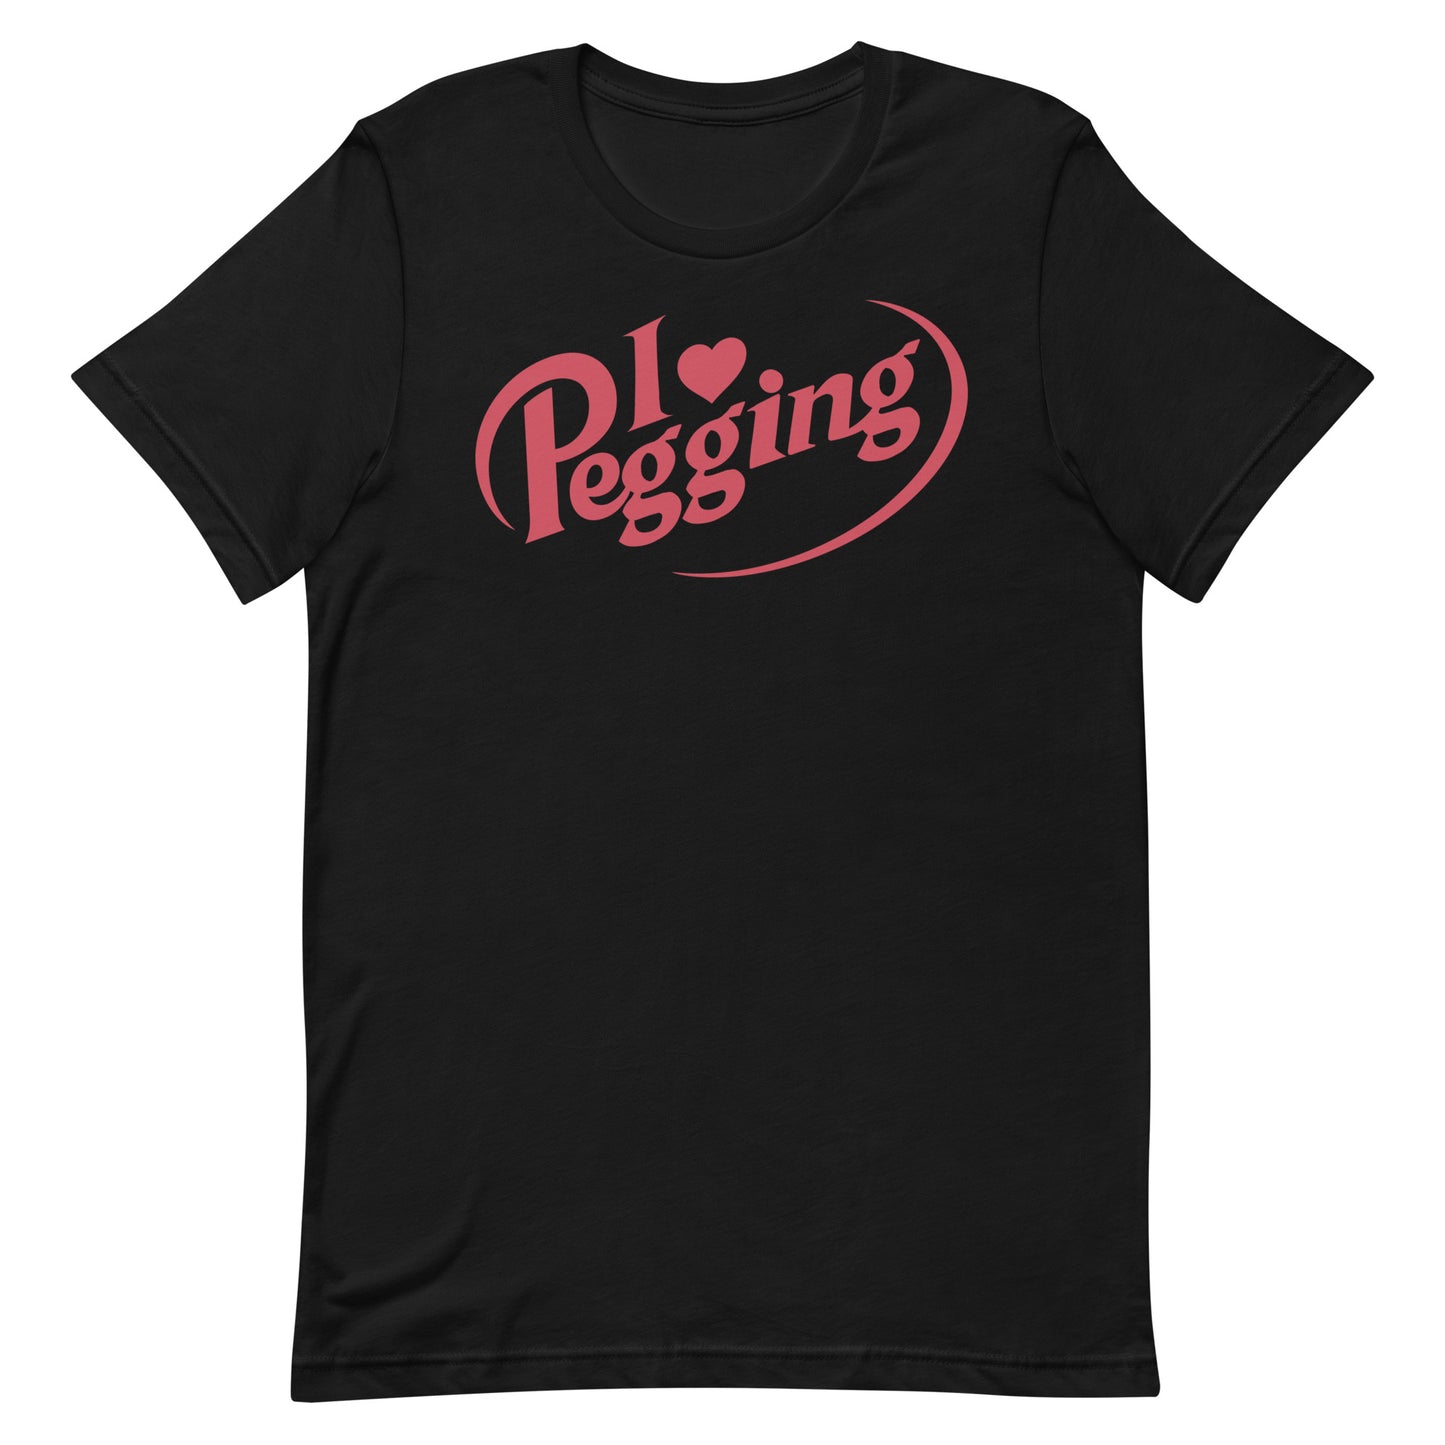 I <3 Pegging Unisex t-shirt